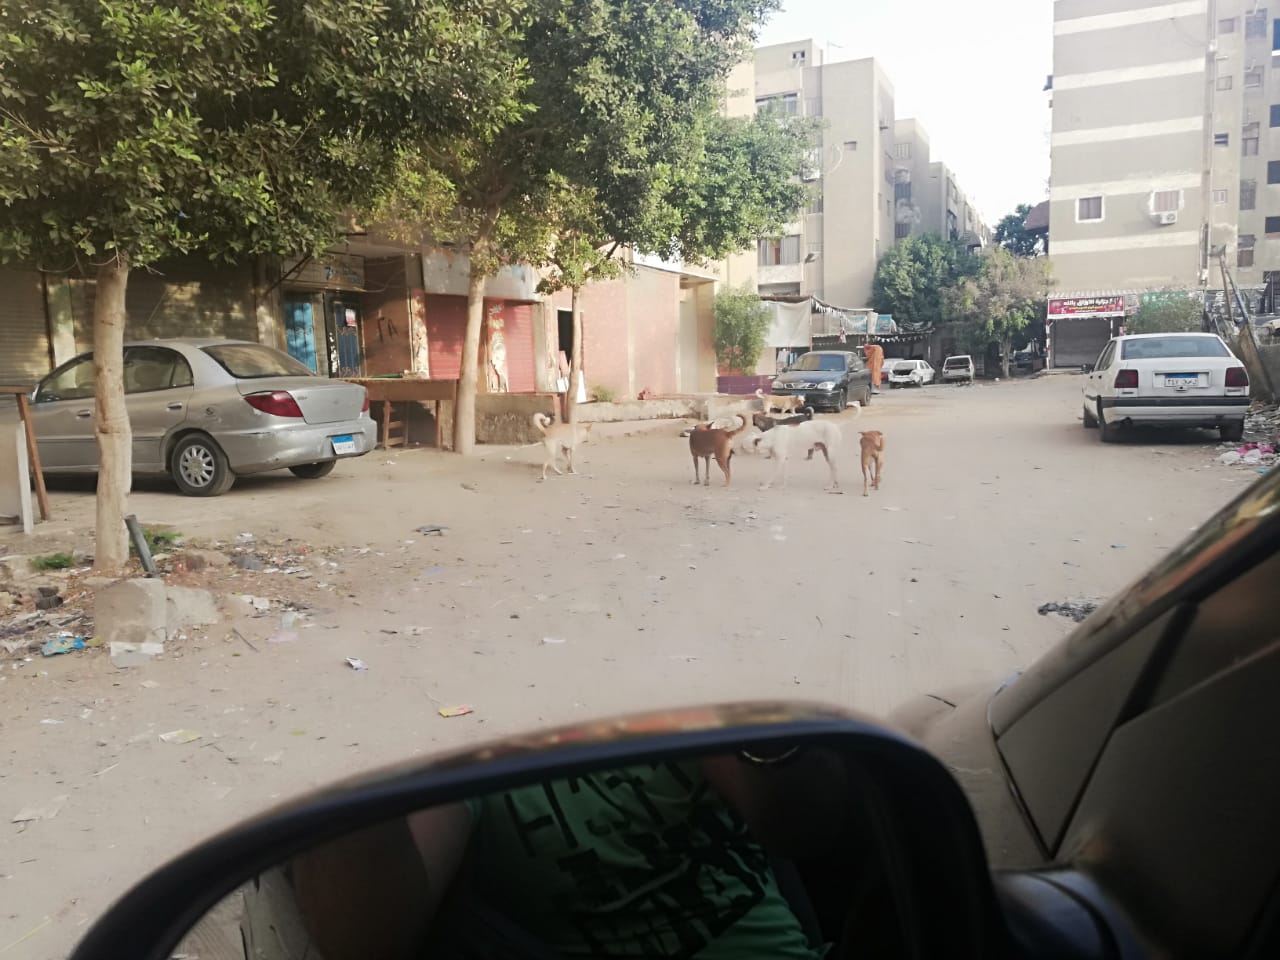  انتشار الكلاب الضالة بشوارع صقر قريش فى مدينة نصر  (3)